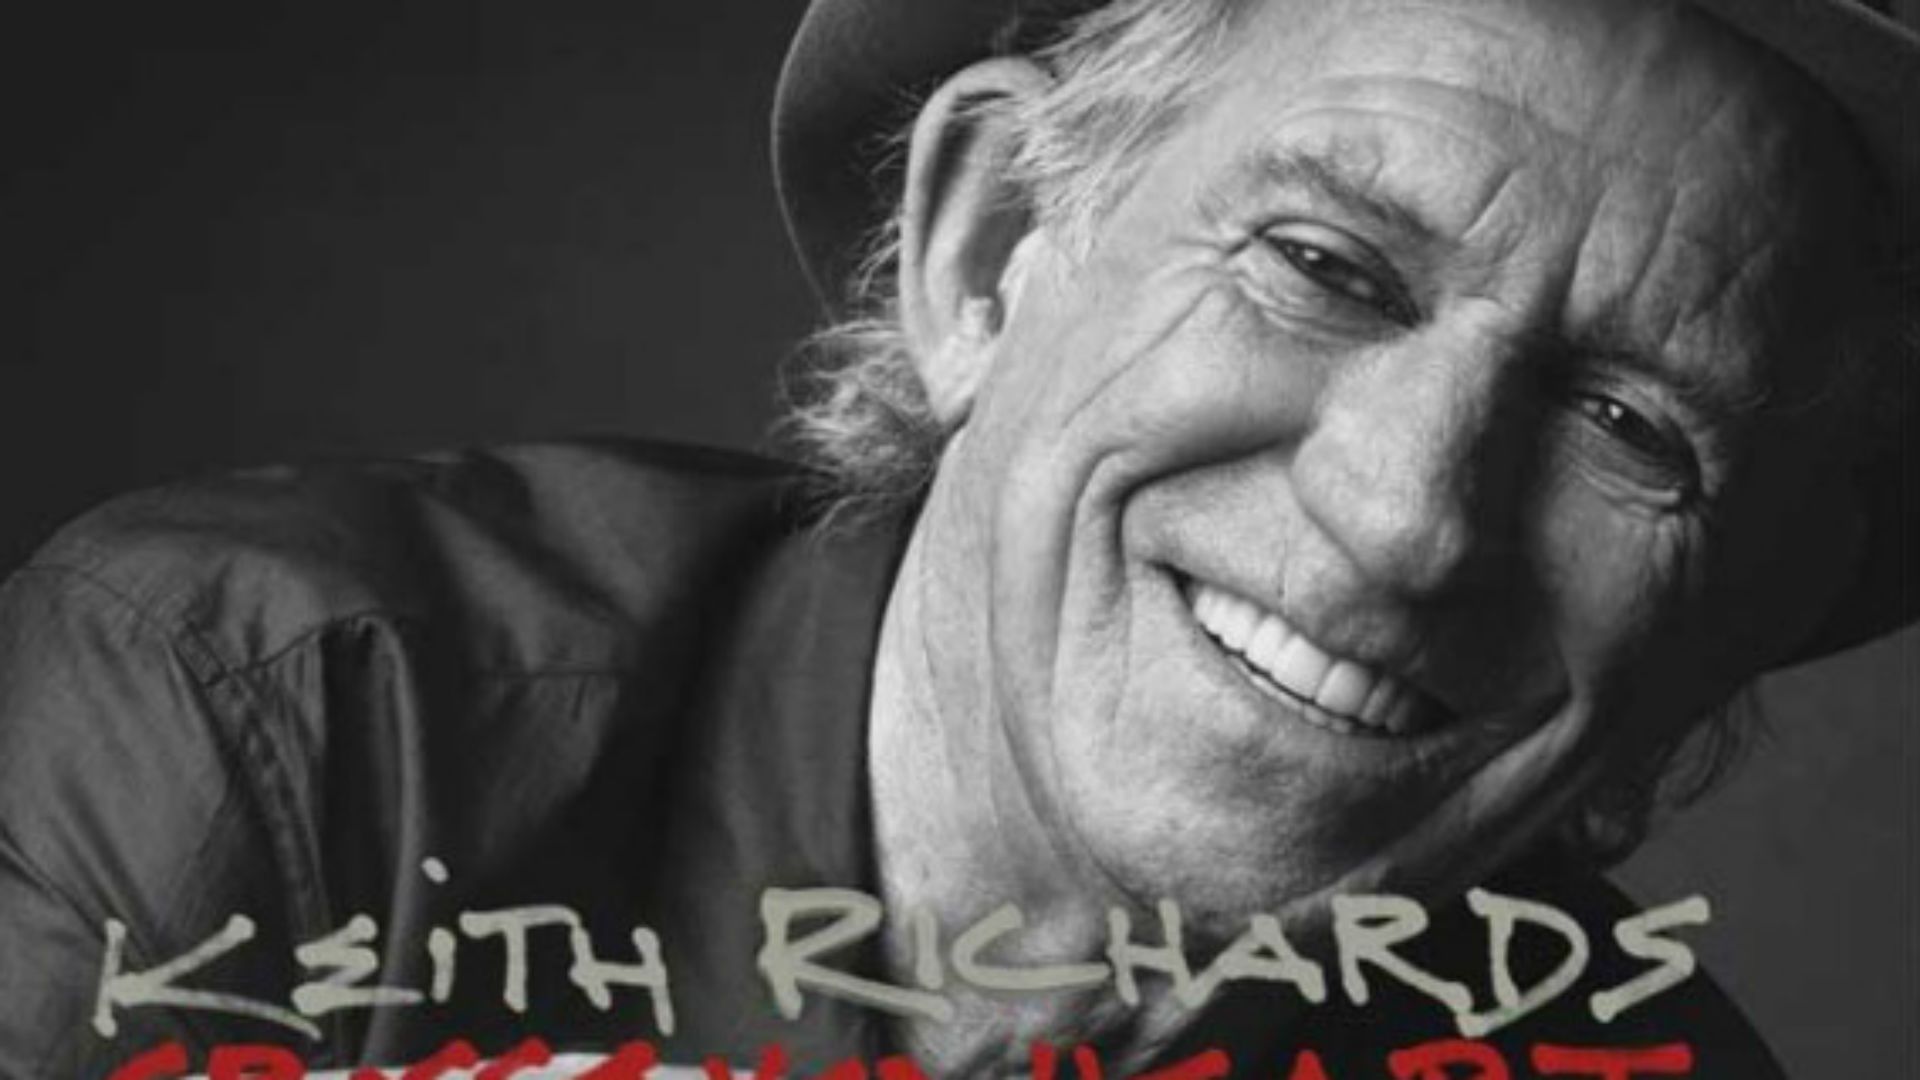 Le premier album solo de Keith Richards depuis 20 ans, intitulé "Crosseyed Heart", sortira en septembre